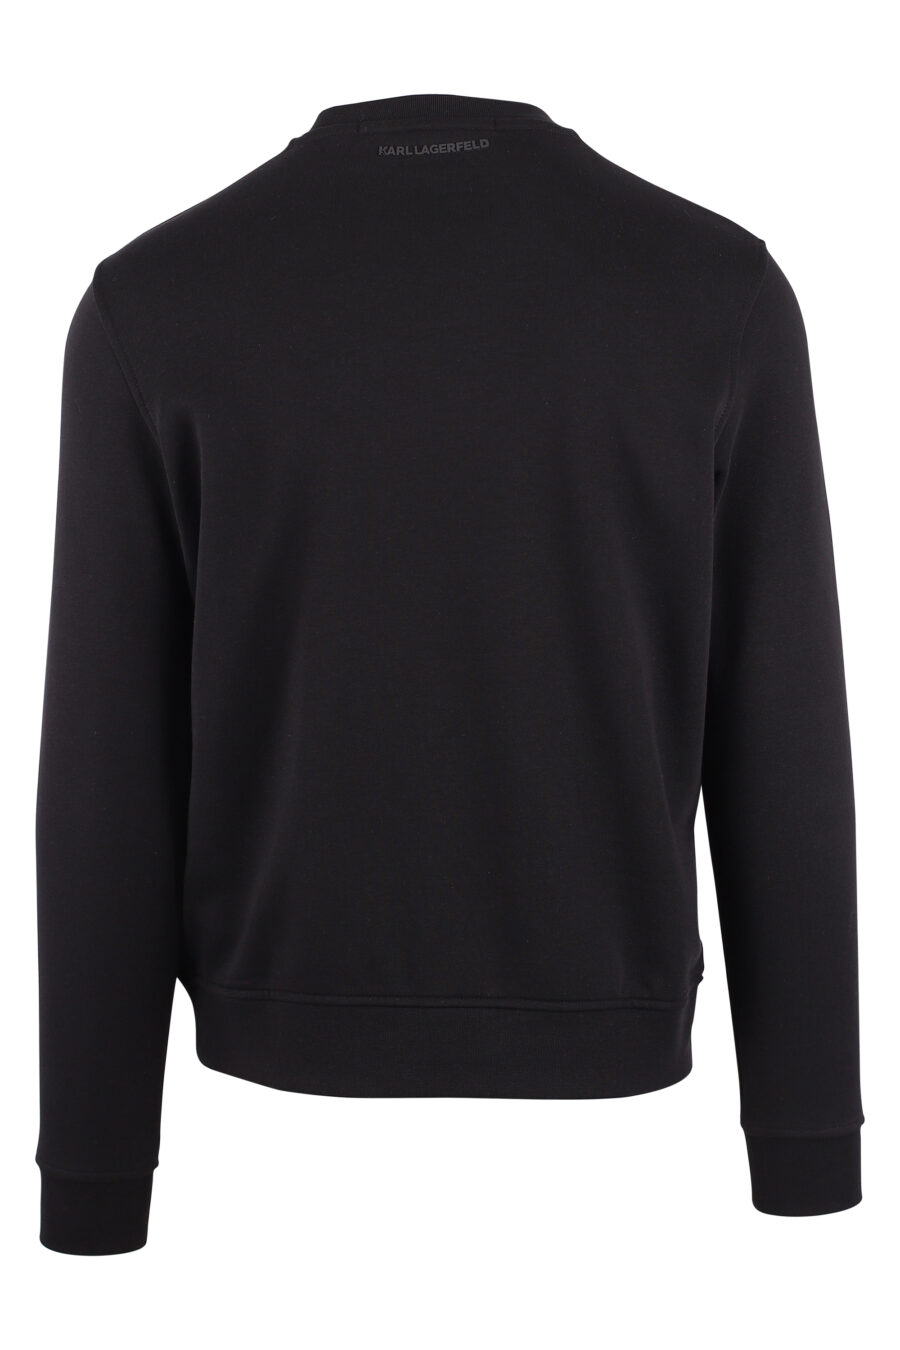 Schwarzes Sweatshirt mit Maxilogo "karl" in oranger Silhouette - IMG 9440 1